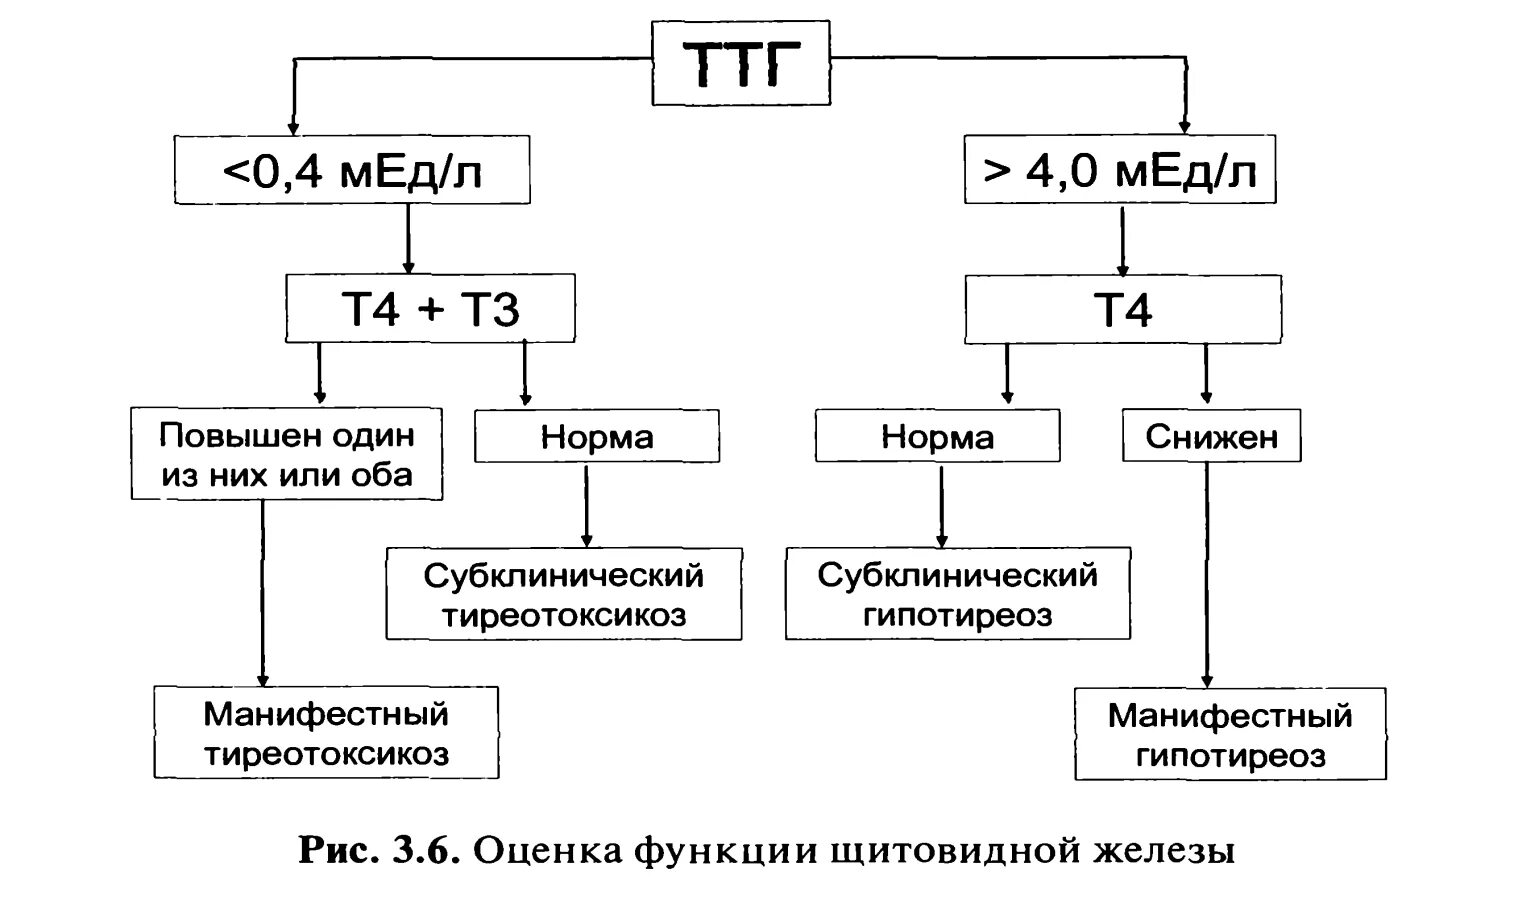 Повышенные ттг т3 т4. Гипотиреоз при нормальном ТТГ т3 т4. Низкий т4 при нормальном ТТГ И повышенном т3. Снижен т3 при нормальном ТТГ. Норма показателей ТТГ т3 т4.